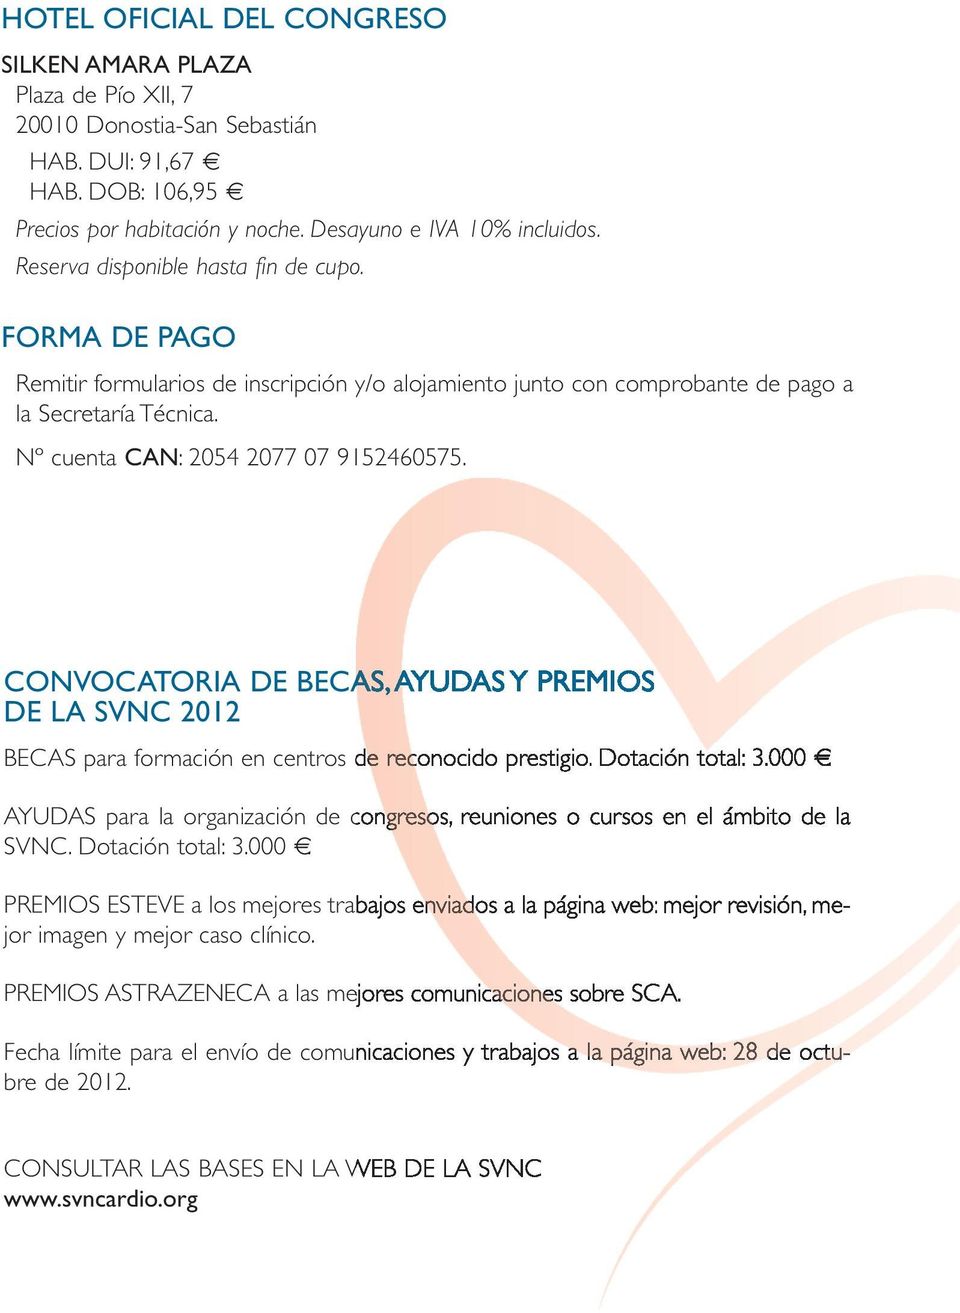 CONVOCATORIA DE BECAS, AYUDAS Y PREMIOS DE LA SVNC 2012 BECAS para formación en centros de reconocido prestigio. Dotación total: 3.000.